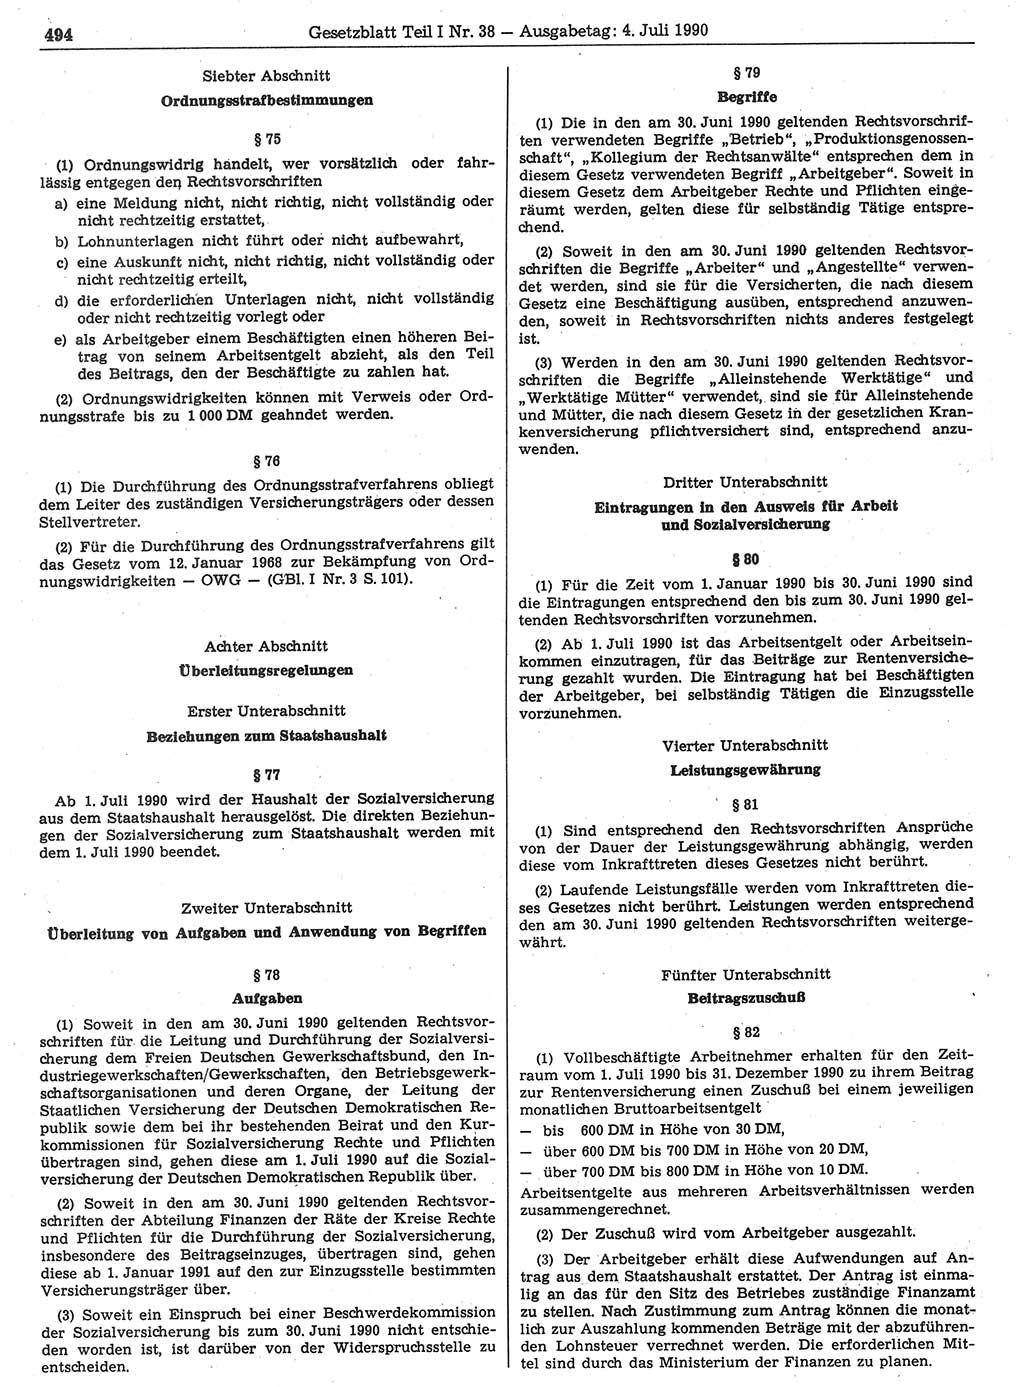 Gesetzblatt (GBl.) der Deutschen Demokratischen Republik (DDR) Teil Ⅰ 1990, Seite 494 (GBl. DDR Ⅰ 1990, S. 494)